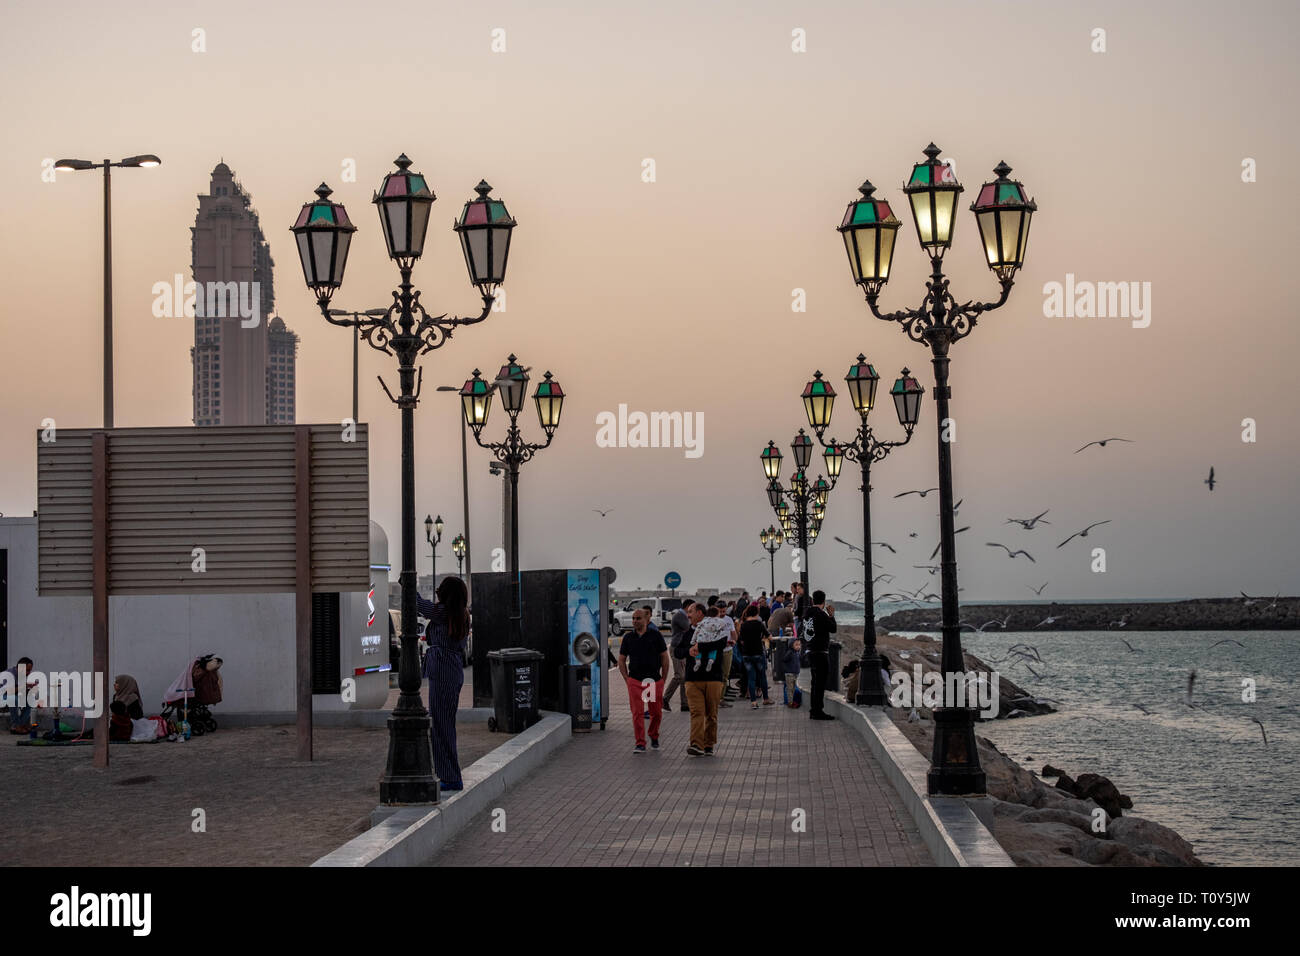 Febbraio 26, 2019 - Abu Dhabi, Emirati arabi uniti: persone godendo a Cornich Marina illuminata con Lampost alla sera, Abu Dhabi, Emirati arabi uniti Foto Stock